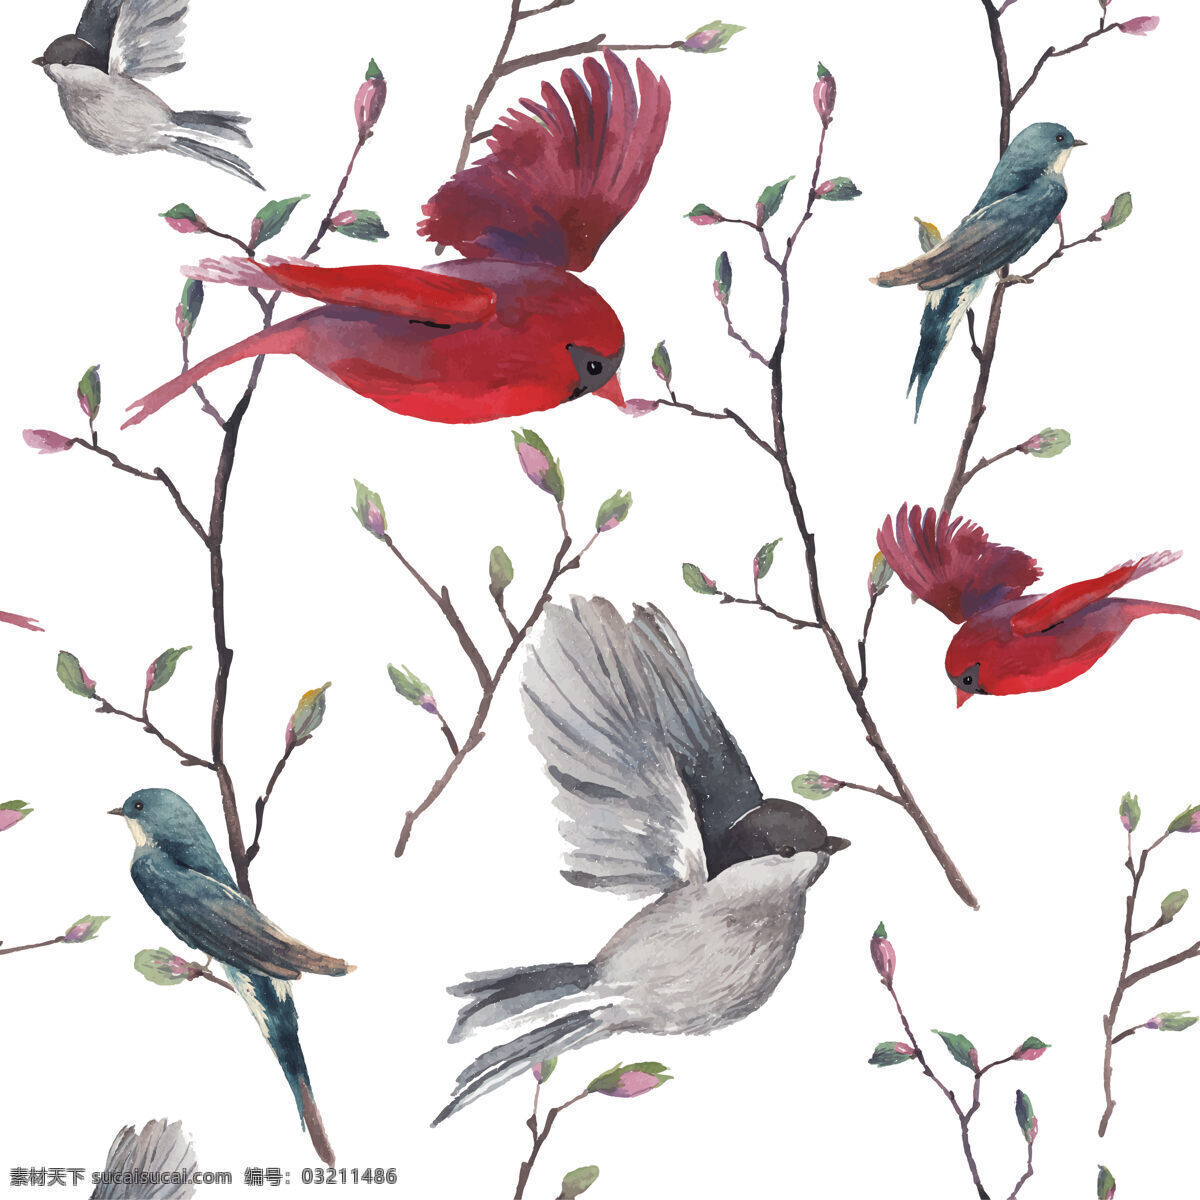 高雅 水墨 动植物 壁纸 图案 装饰设计 壁纸图案 浅褐色树枝 红色小鸟 灰色小鸟